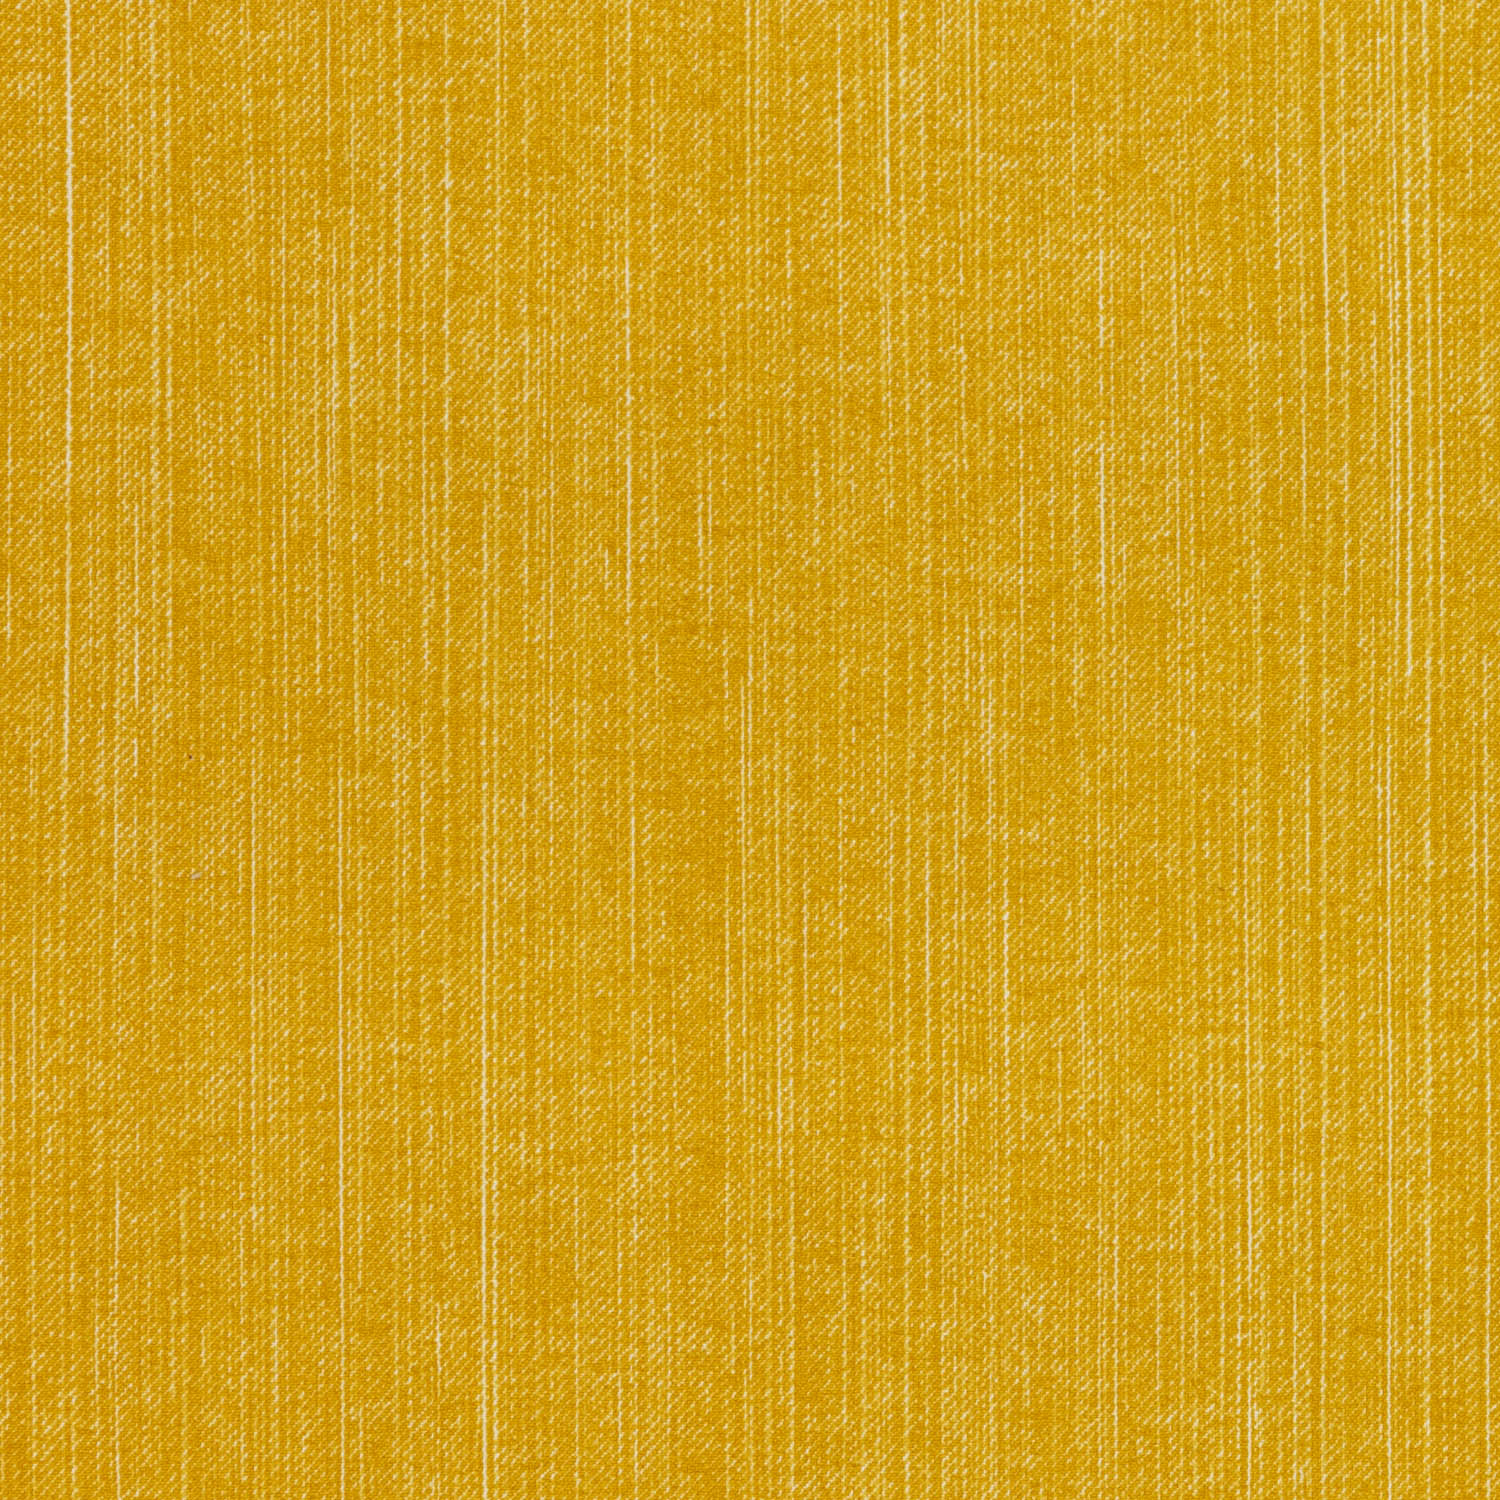 l-187-yellow-fermoie-plain-cotton-1.jpg